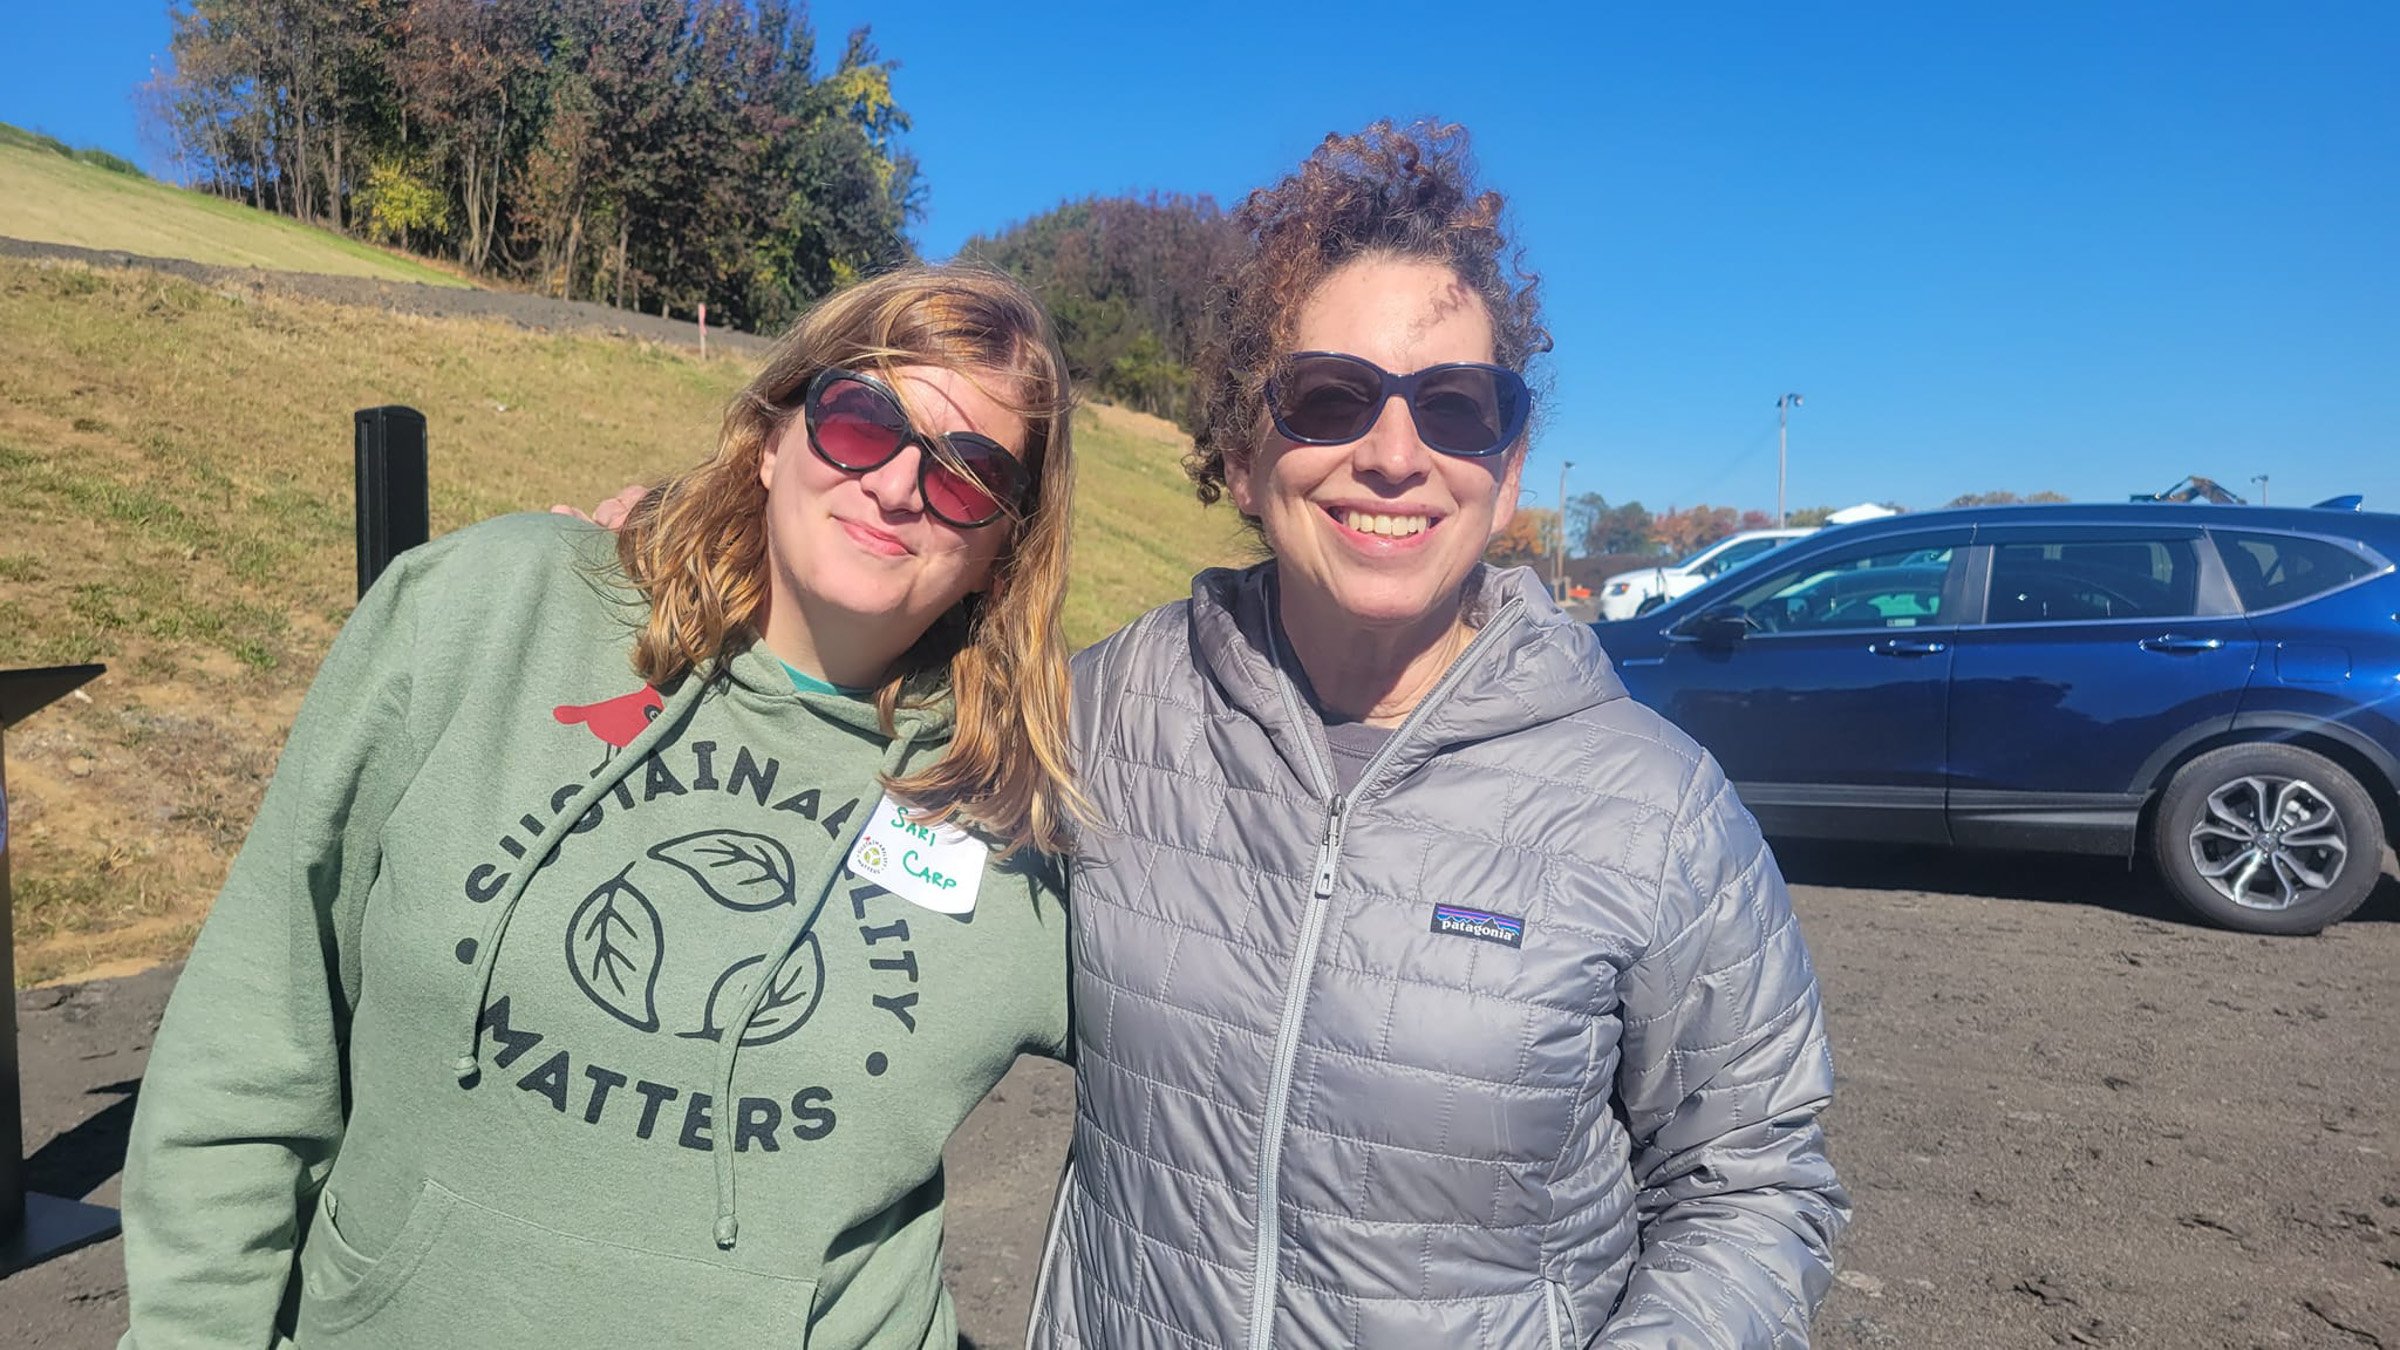  Sari Carp and Sarah Cohen at Fairfax County Landfill seeding party 